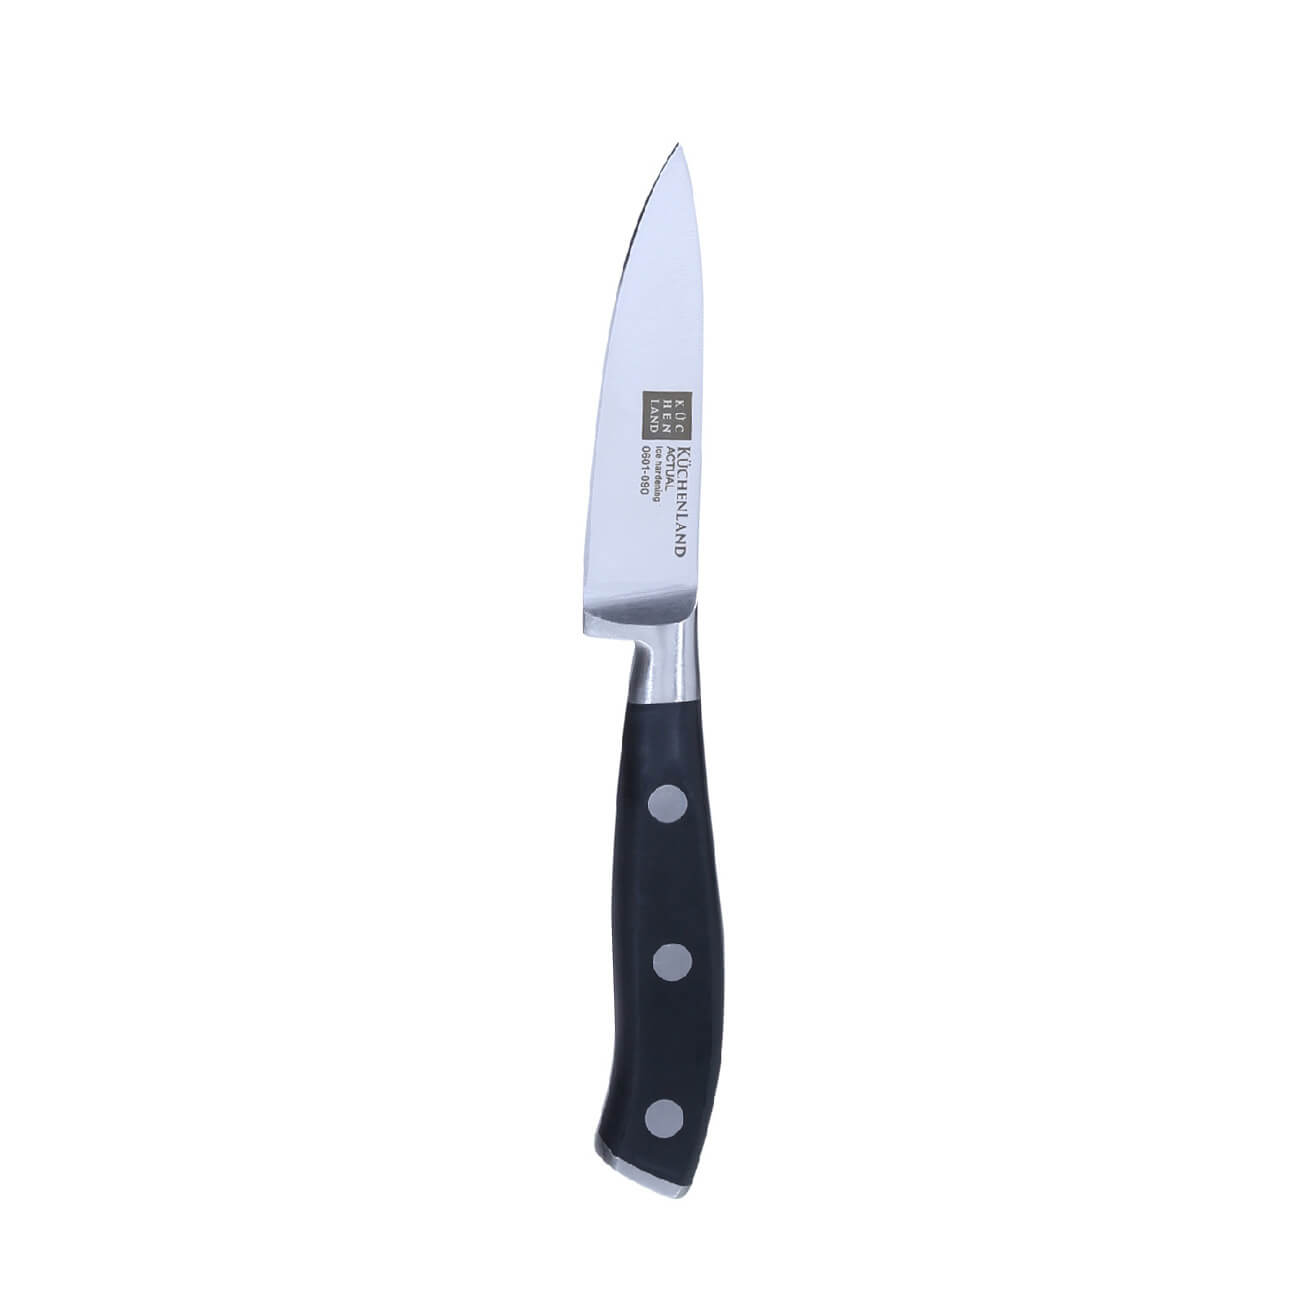 Нож для чистки овощей, 9 см, сталь/пластик, Actual изображение № 1